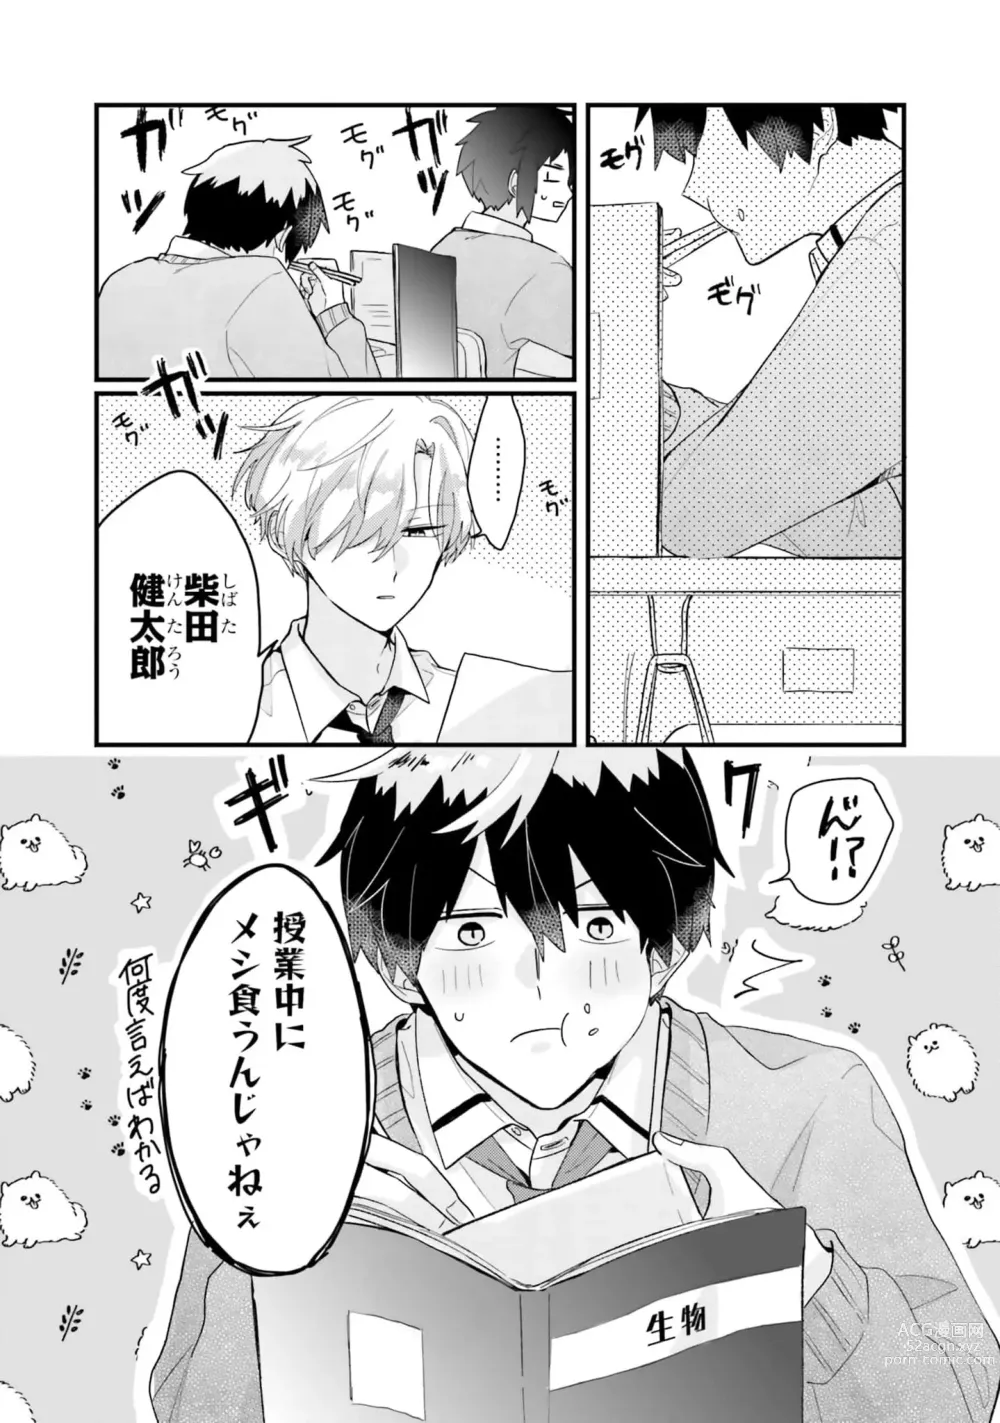 Page 6 of manga Shishunki ni wa Me no Doku desu